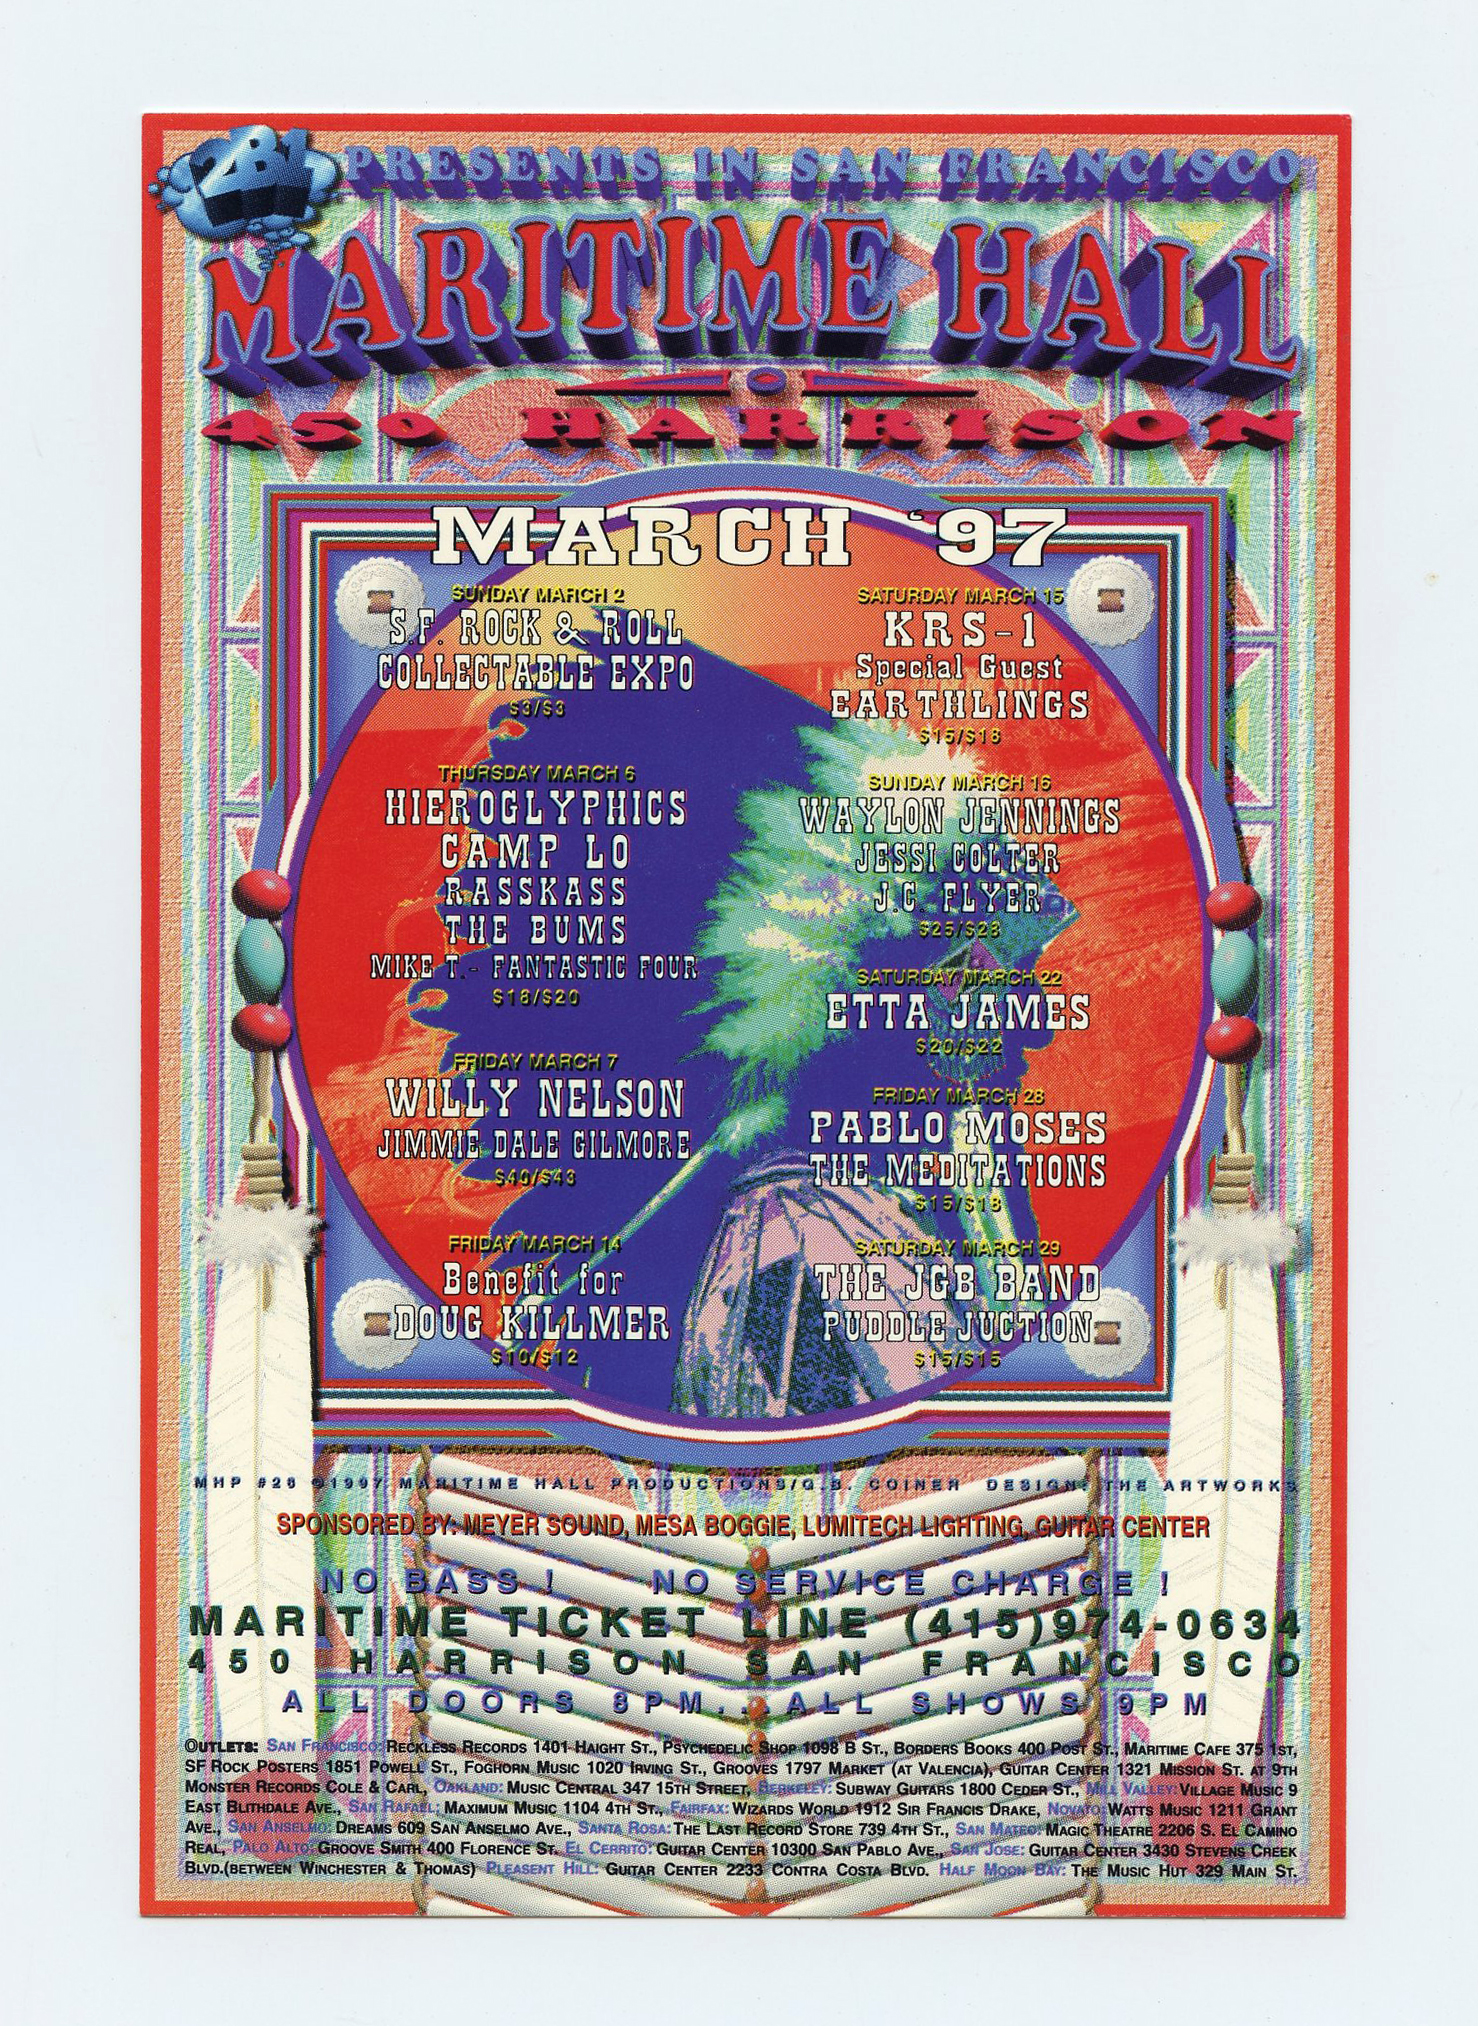 Maritime Hall 1997 Mar Handbill Etta James Willie Nelson KRS-1